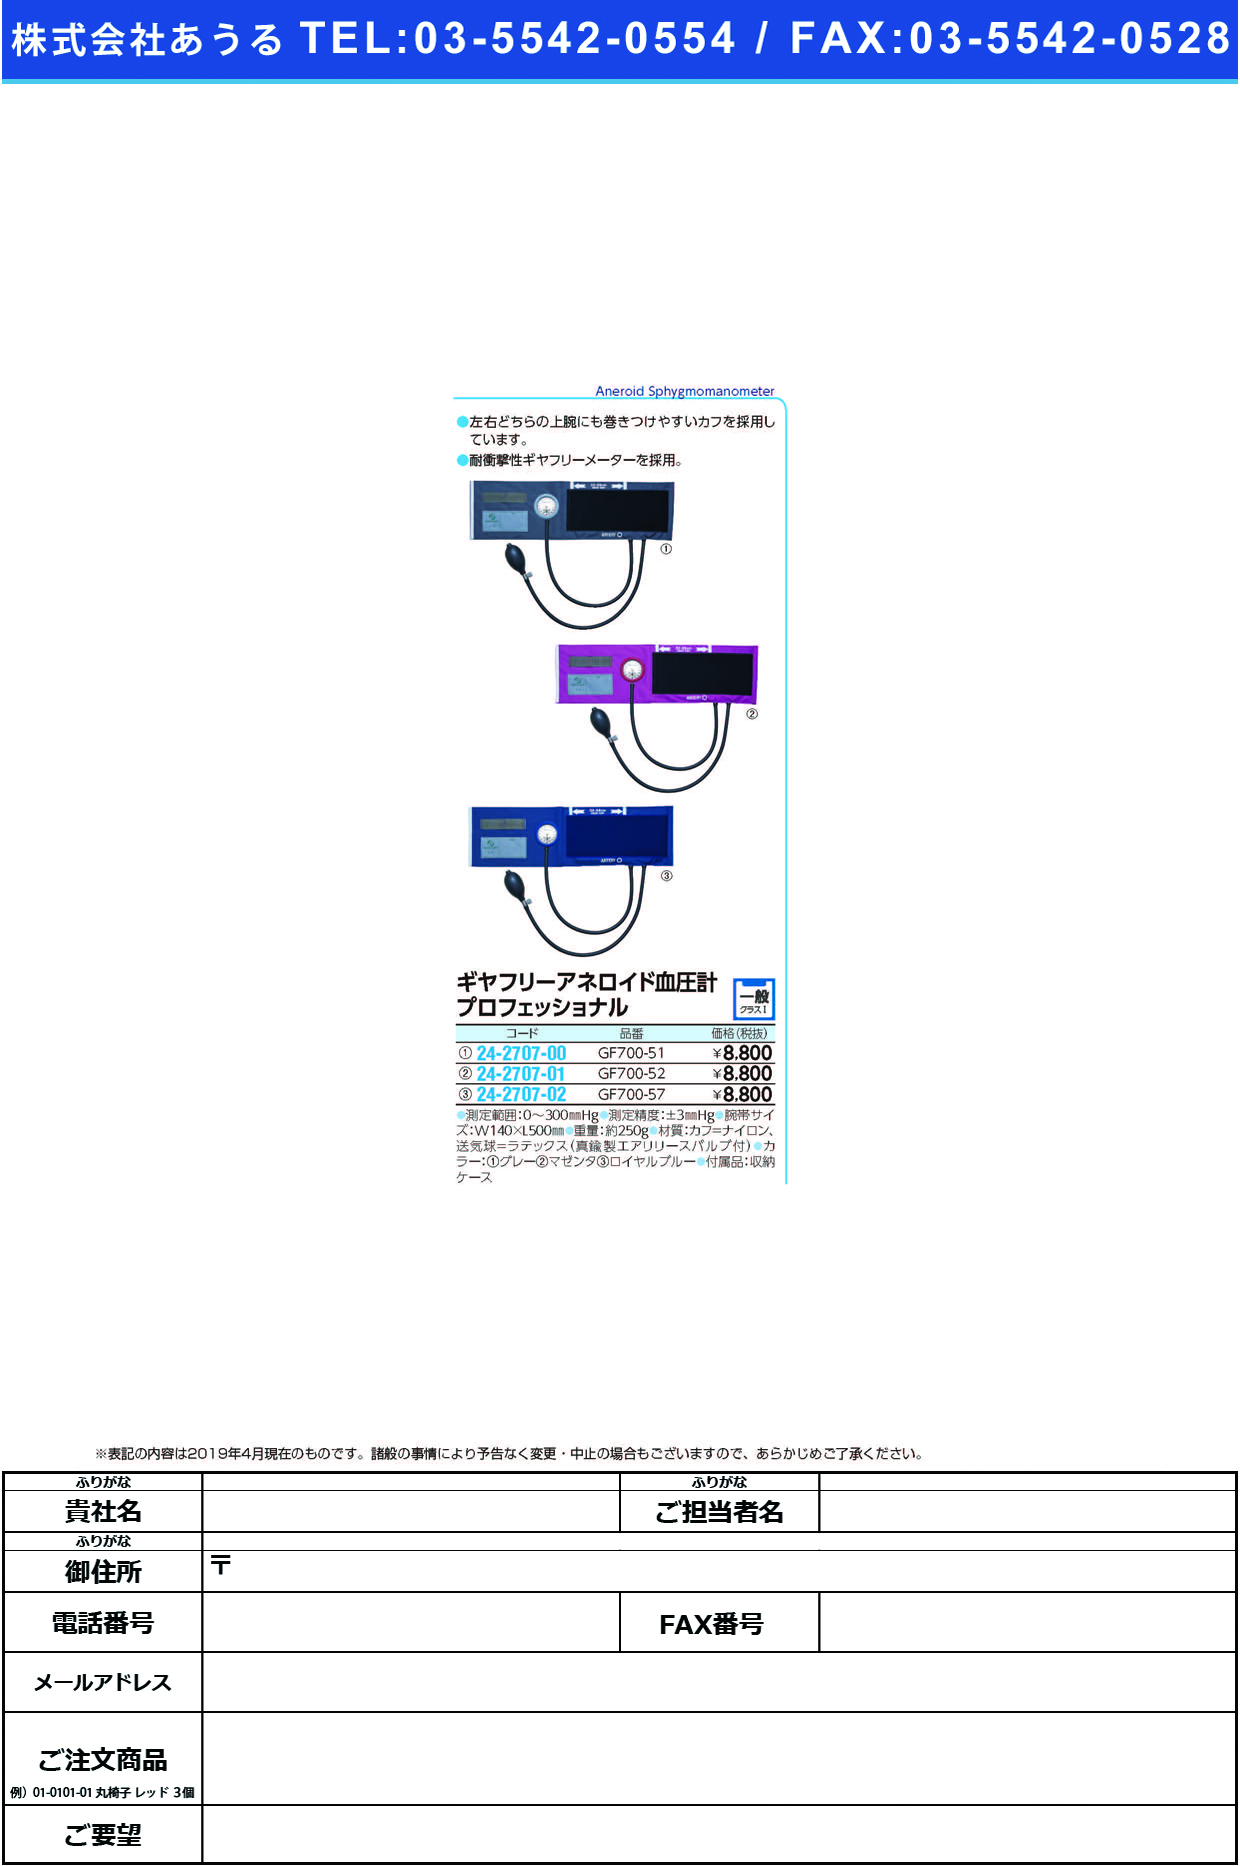 (24-2707-00)ギヤフリー血圧計プロフェッショナル GF700-51(ｸﾞﾚｰ) ｷﾞﾔﾌﾘｰｹﾂｱﾂｹｲﾌﾟﾛﾌｪｯｼ【1台単位】【2019年カタログ商品】